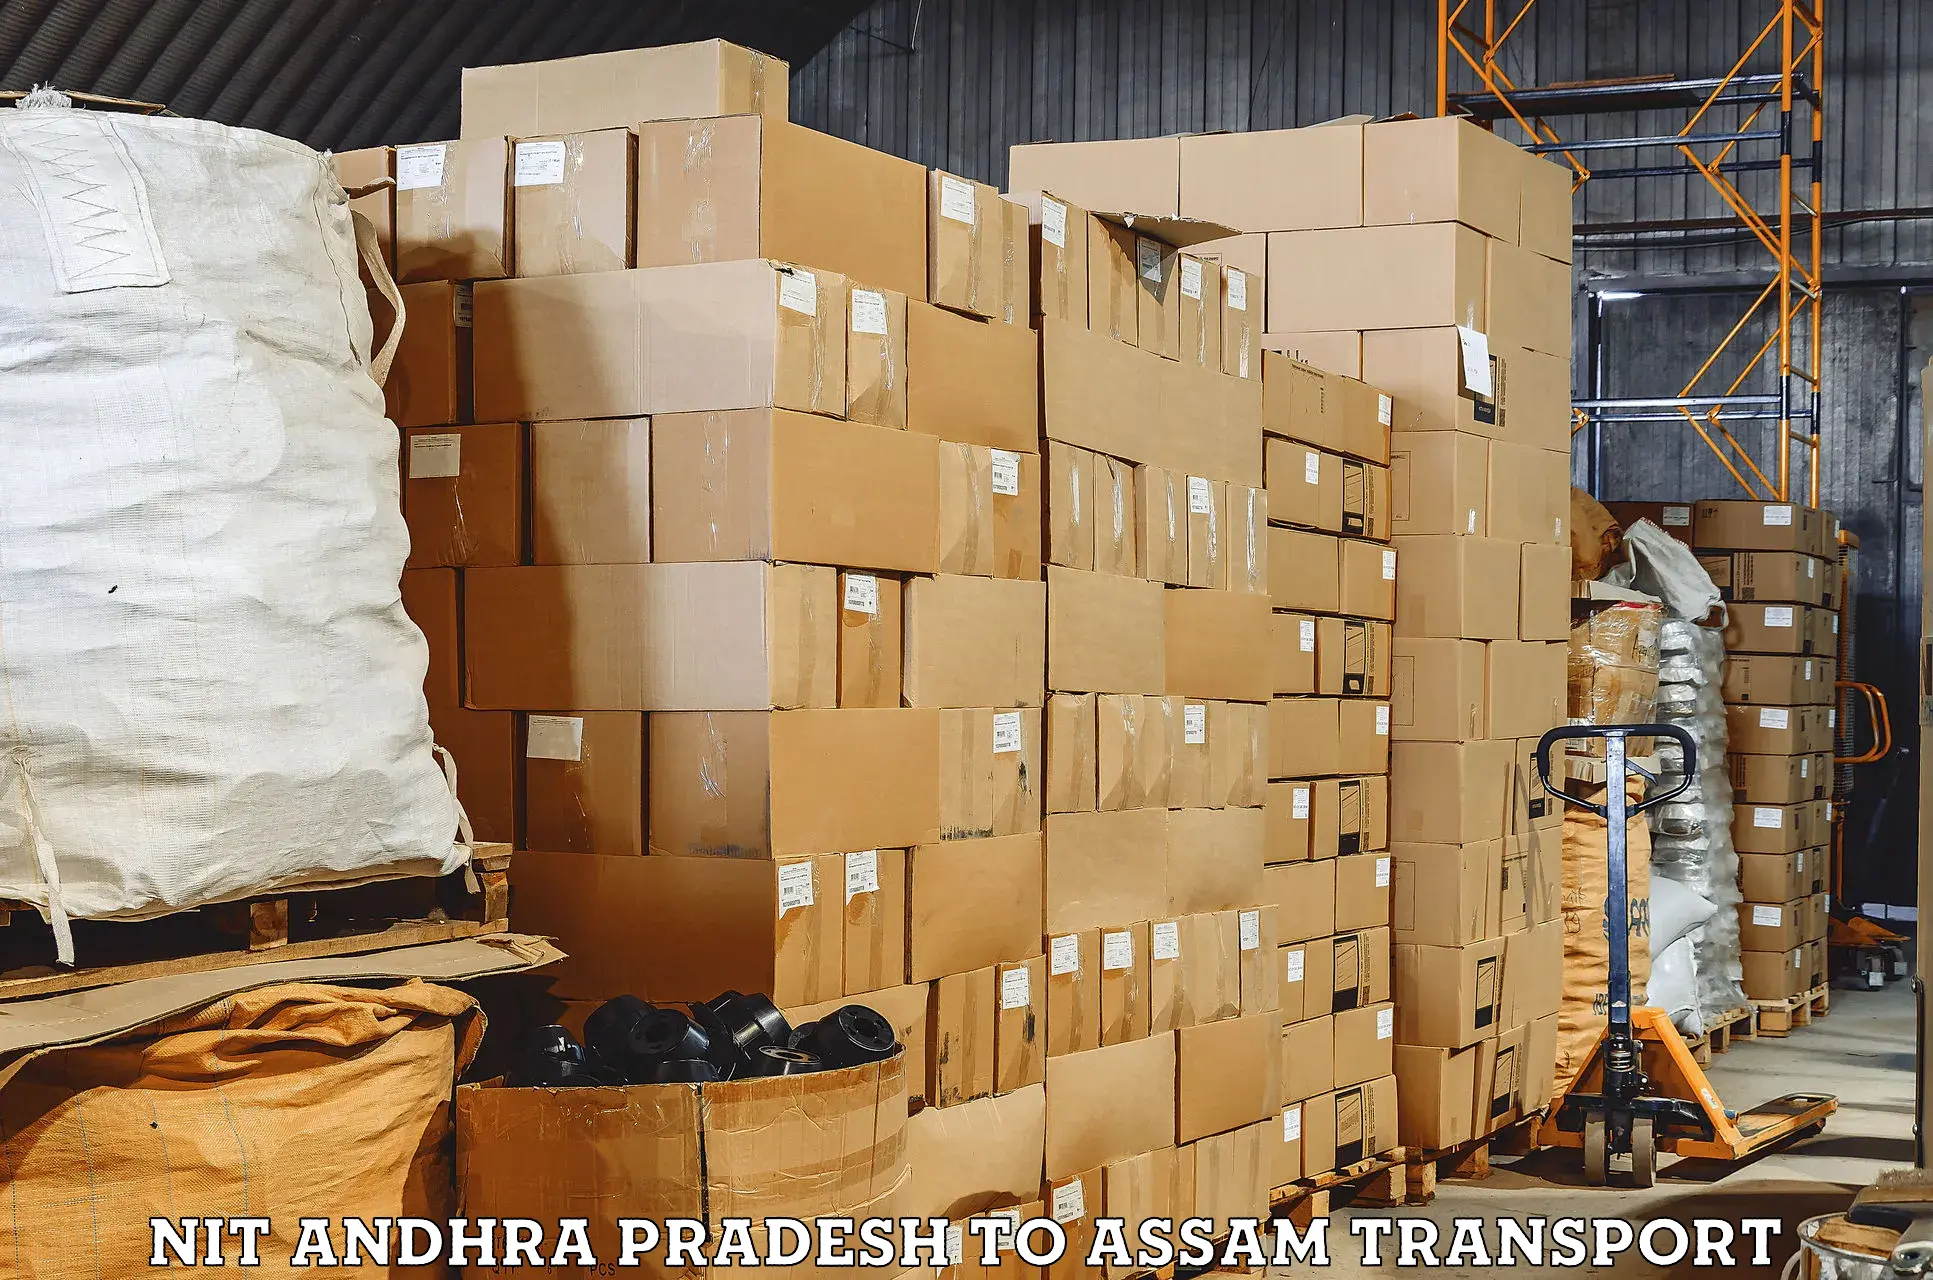 Furniture transport service NIT Andhra Pradesh to Guwahati University